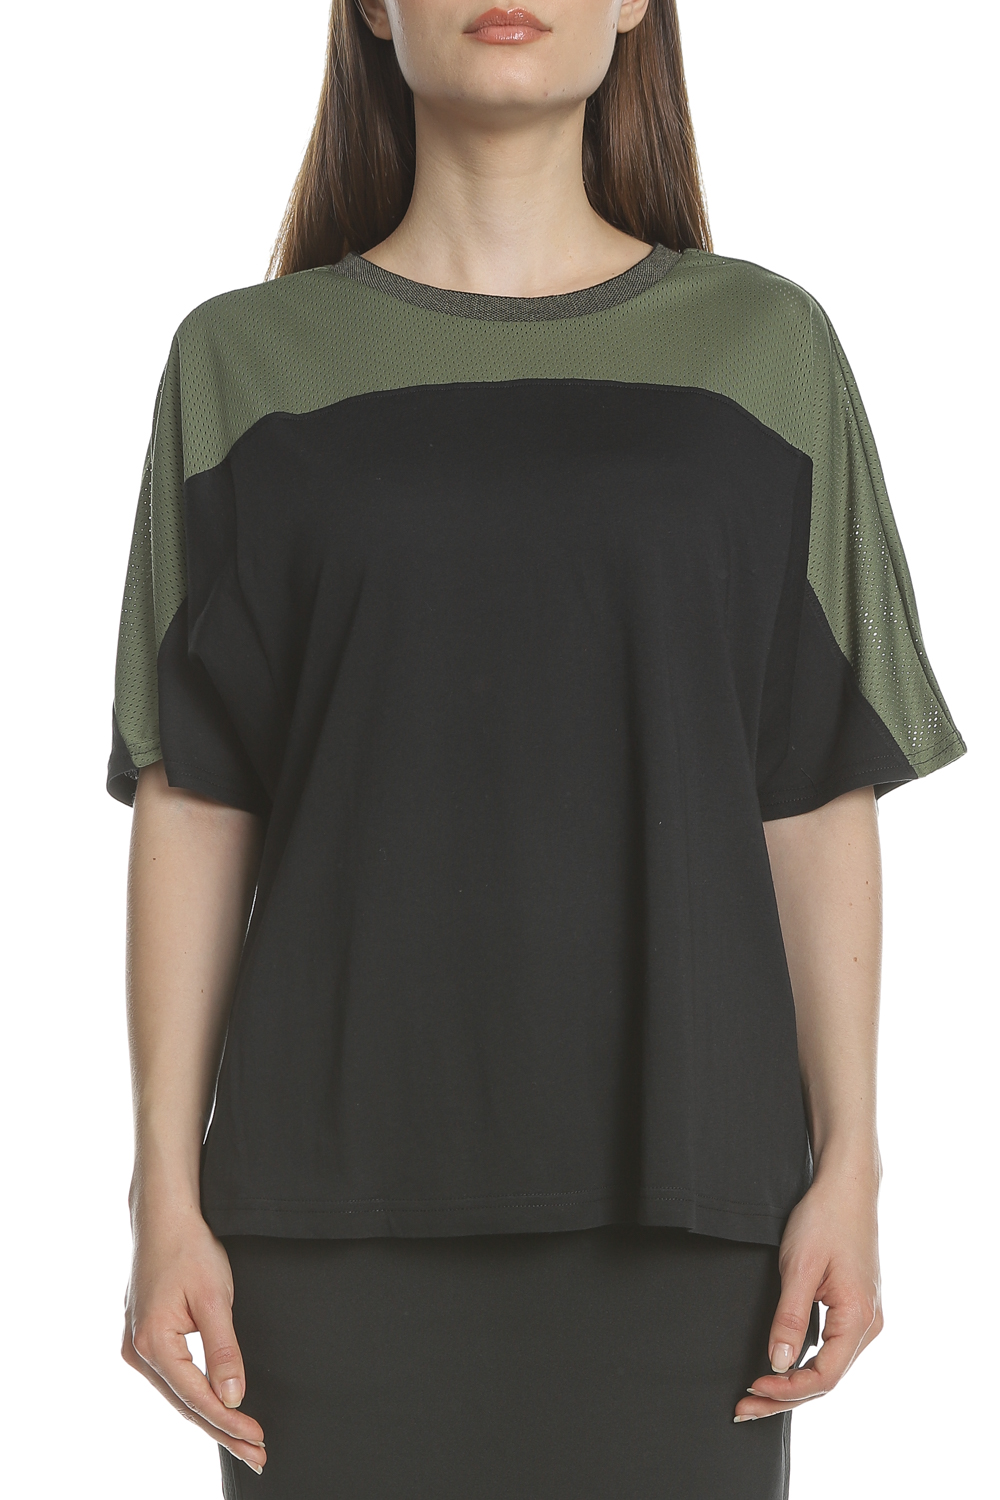 SCOTCH & SODA - Γυναικεία κοντομάνικη μπλούζα SCOTCH & SODA Club Nomade Sporty μαύρη-πράσινη Γυναικεία/Ρούχα/Μπλούζες/Κοντομάνικες